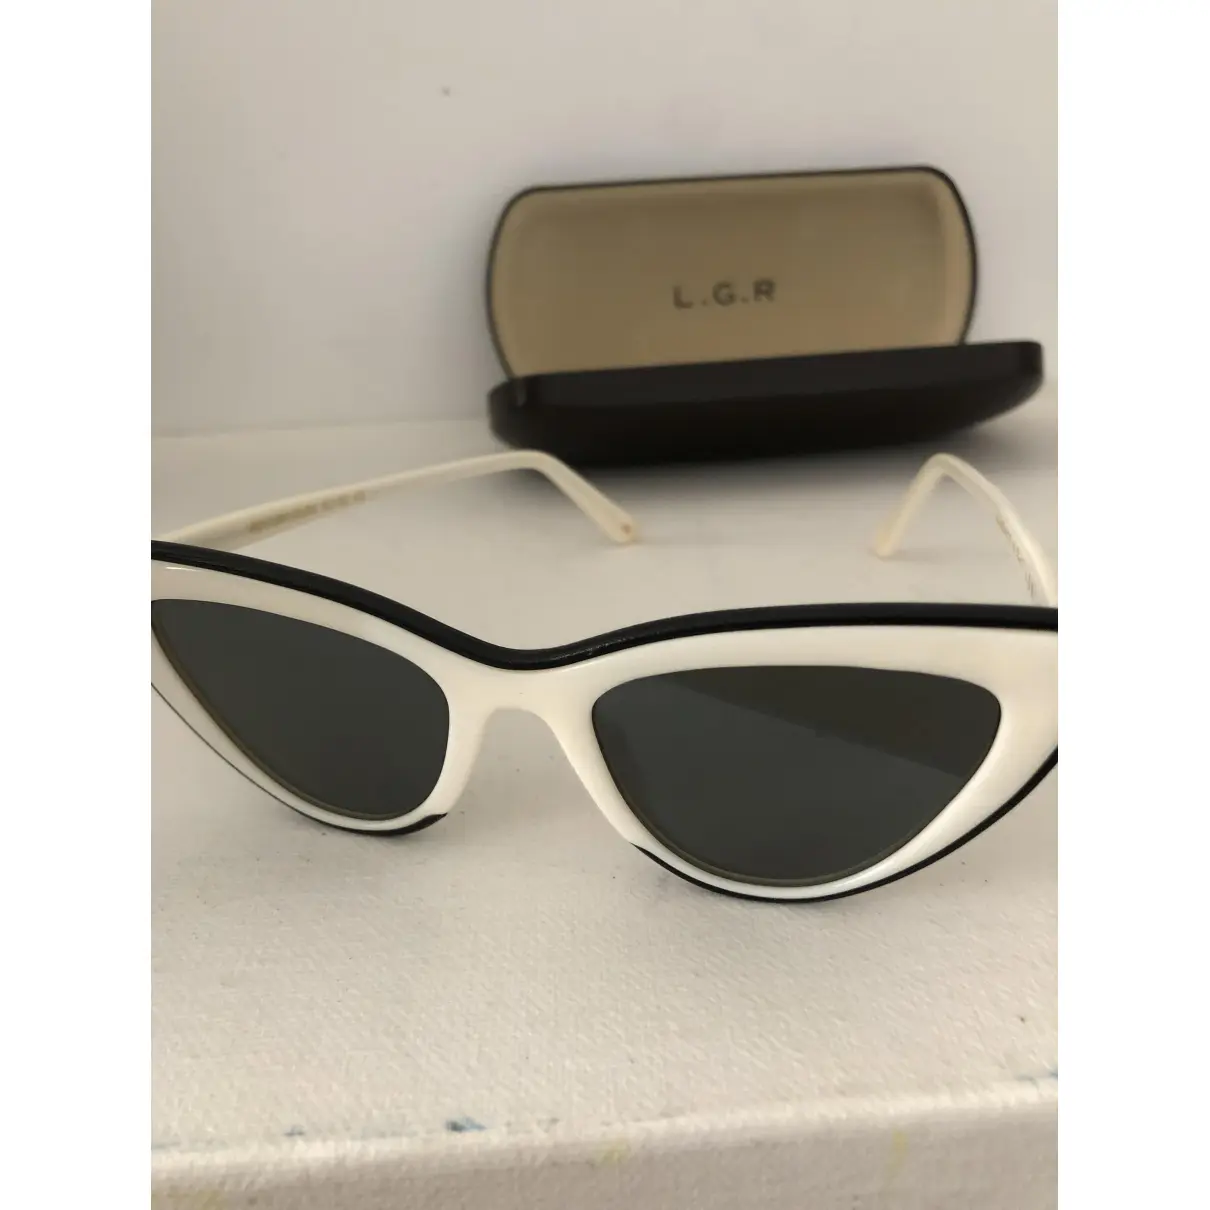 Sunglasses L.G.R